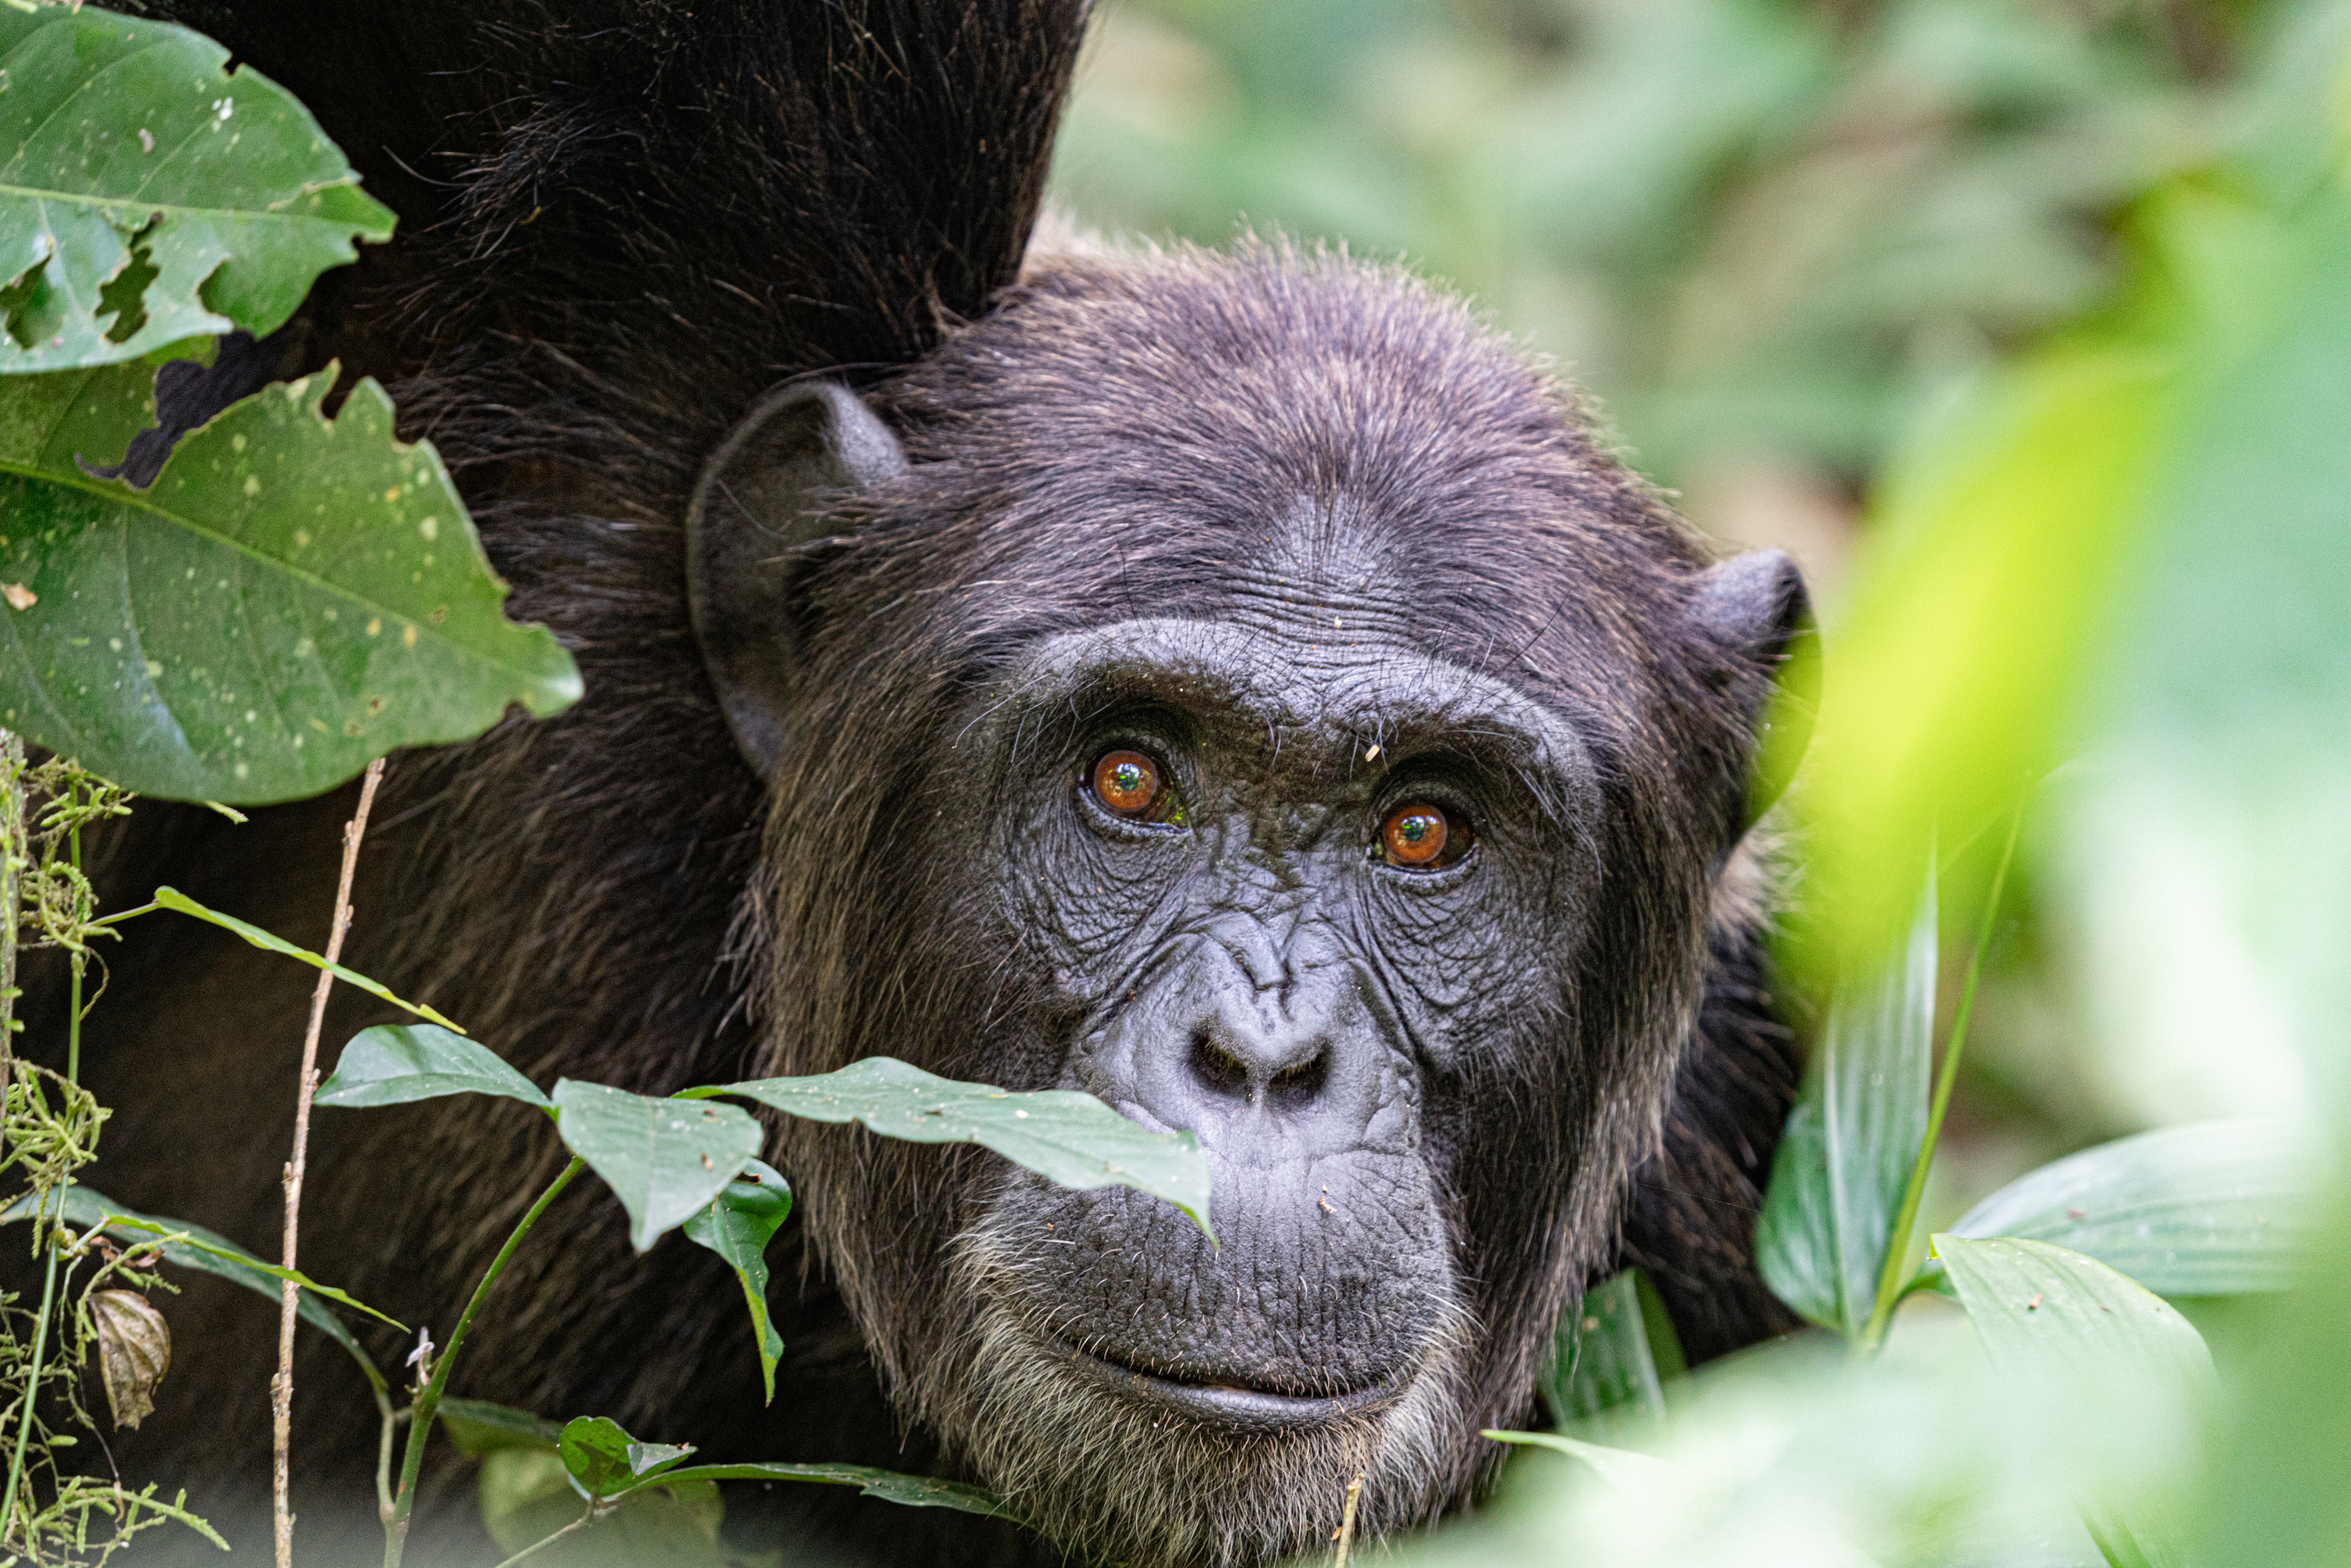 Jane Goodall a passé du temps à observer et étudier les chimpanzés. © EnricoPescantini, Adobe Stock